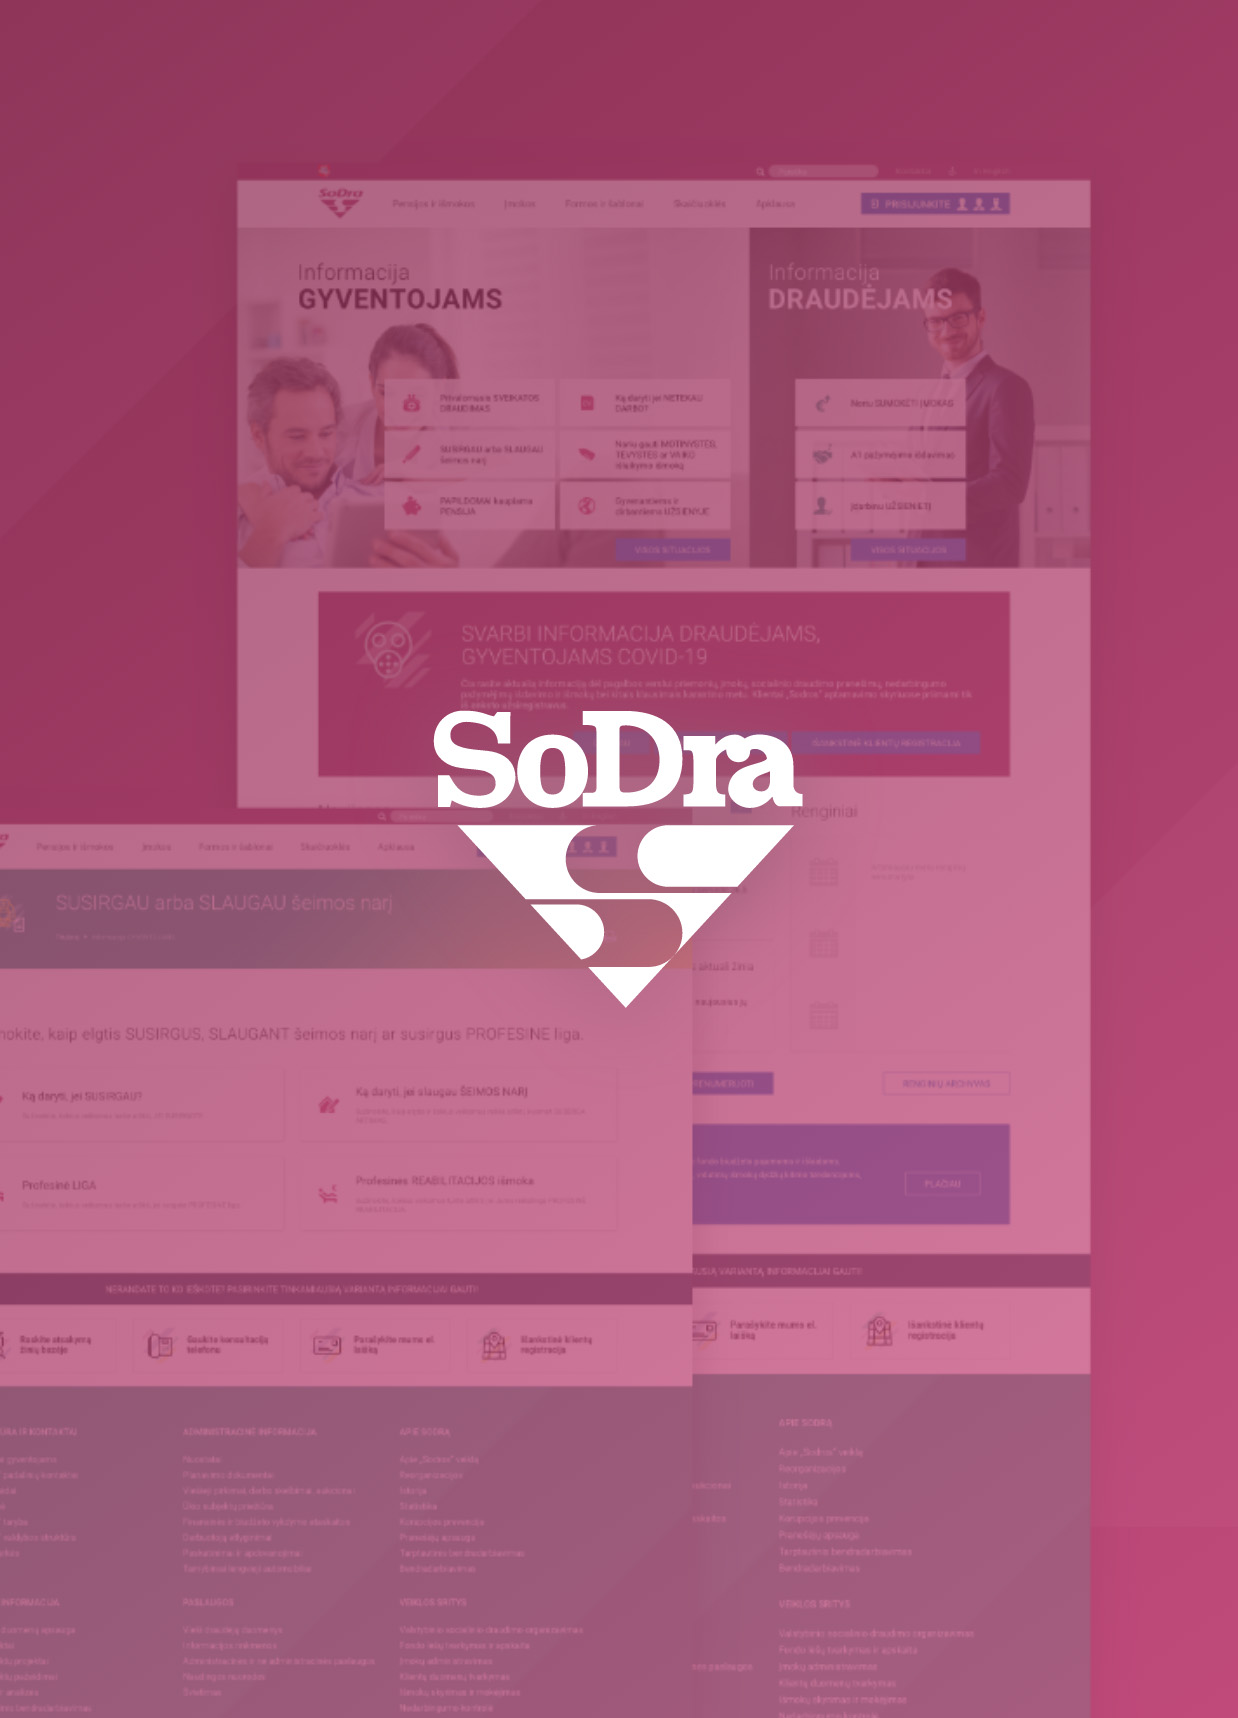 SODRA website